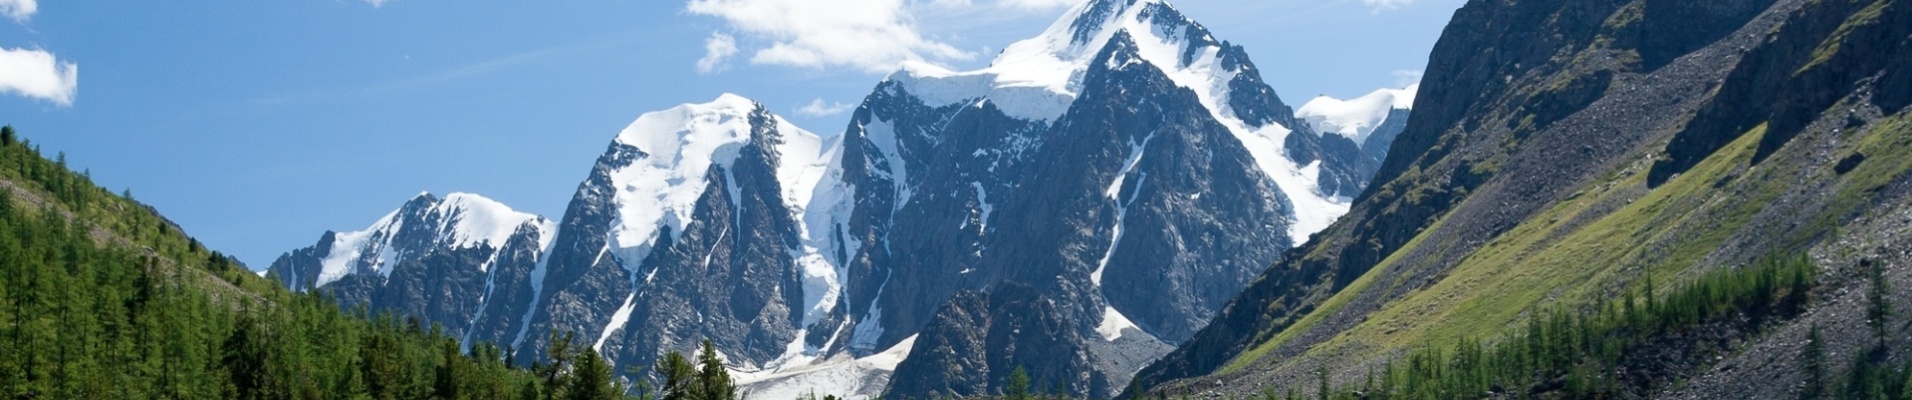 Montagnes et lacs, Altaï, Russie